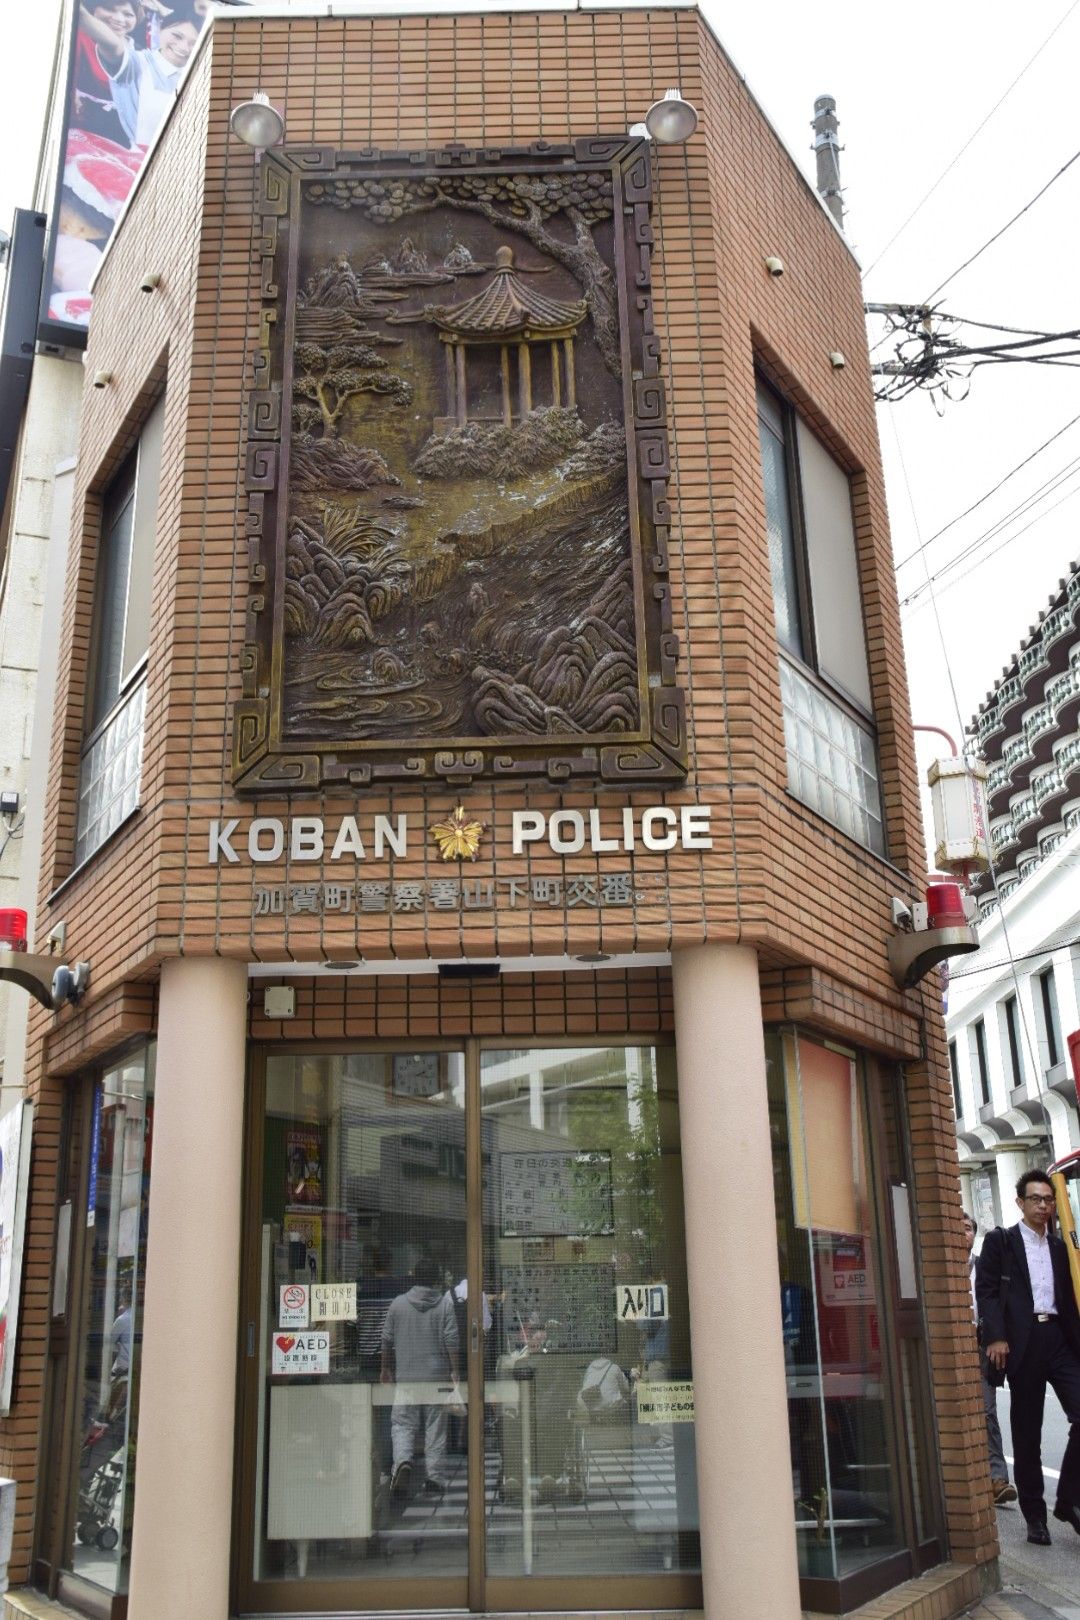 警察局上的看板是中國畫風